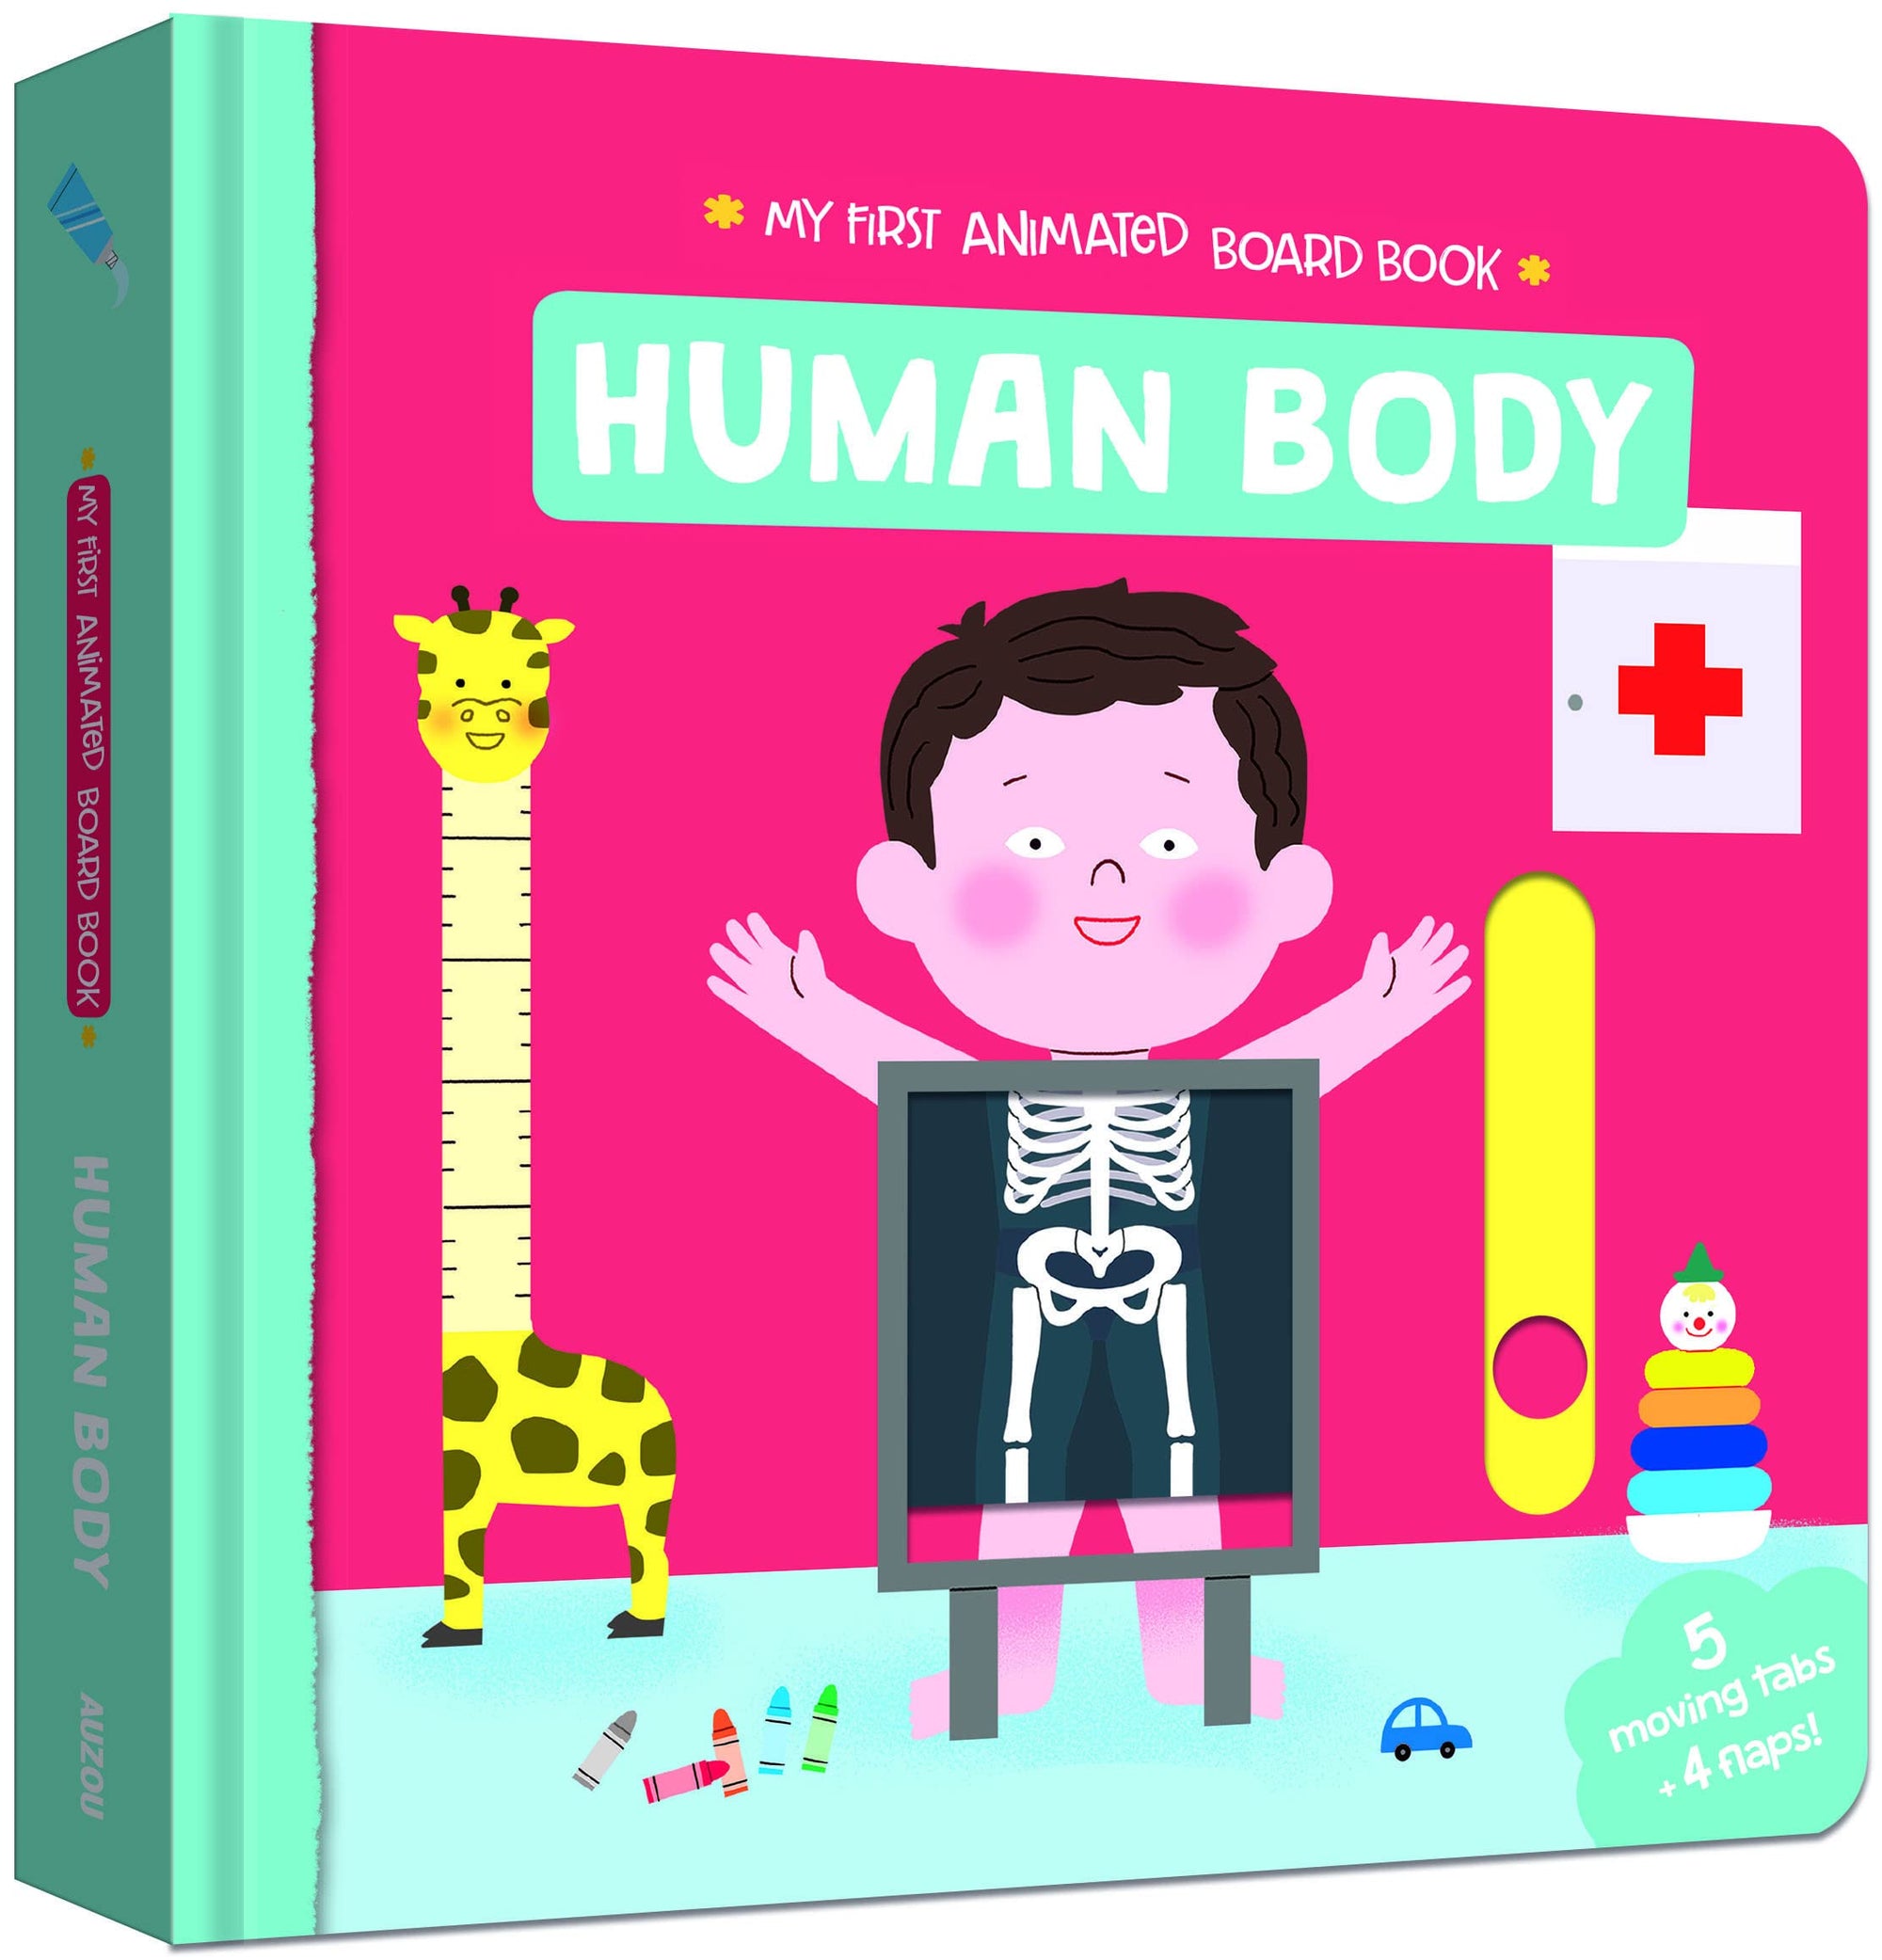 Animated Board Book: Human Body